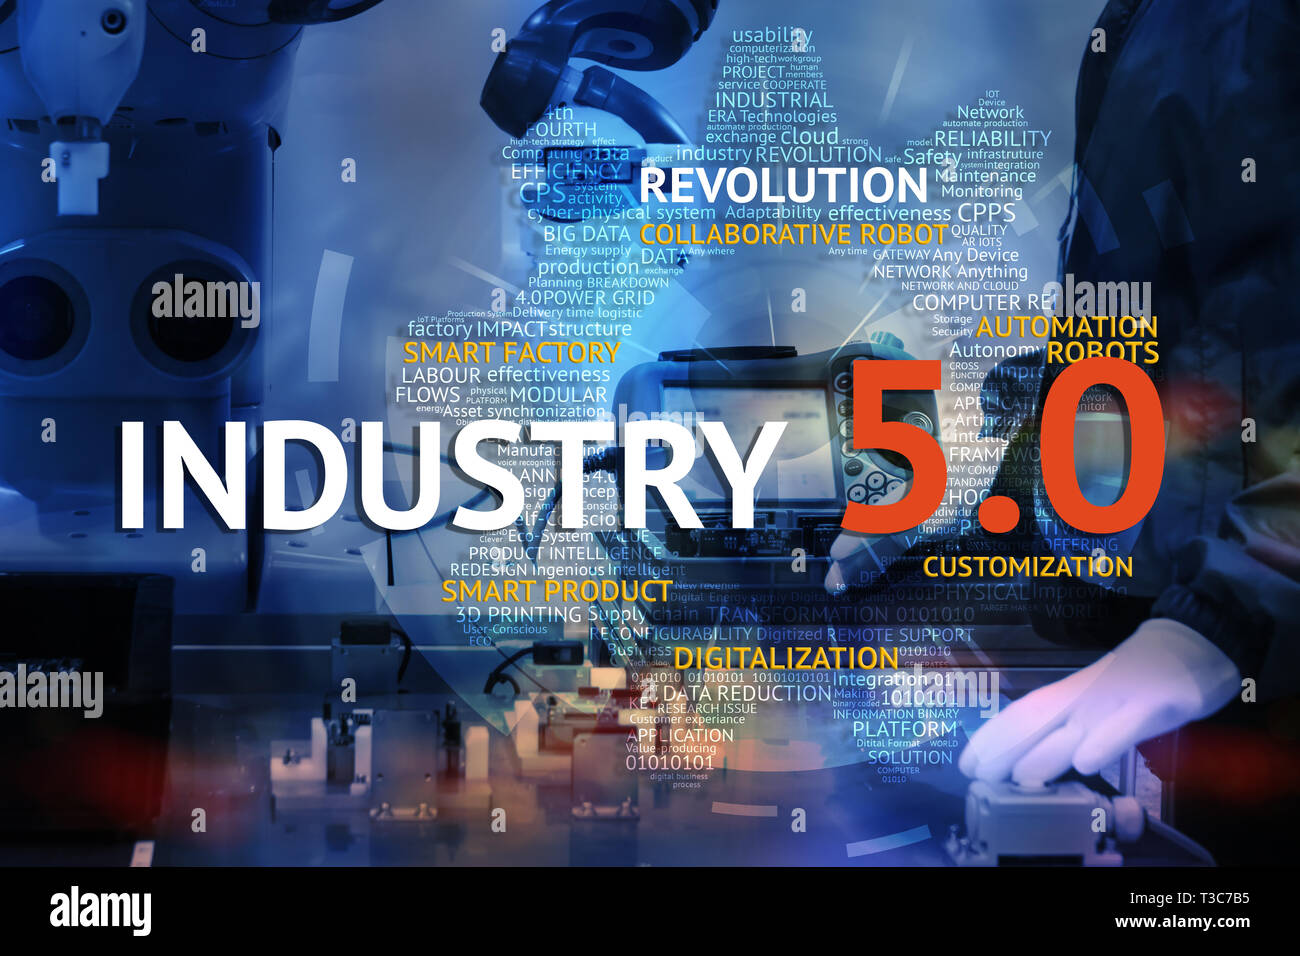 Industrie 4.0, 5.0 kollaborative Roboter Technologie, neue Beziehung zwischen Mensch und Roboter Hand, Maschine, Masse Personalisierung, Produktivität customizati Stockfoto